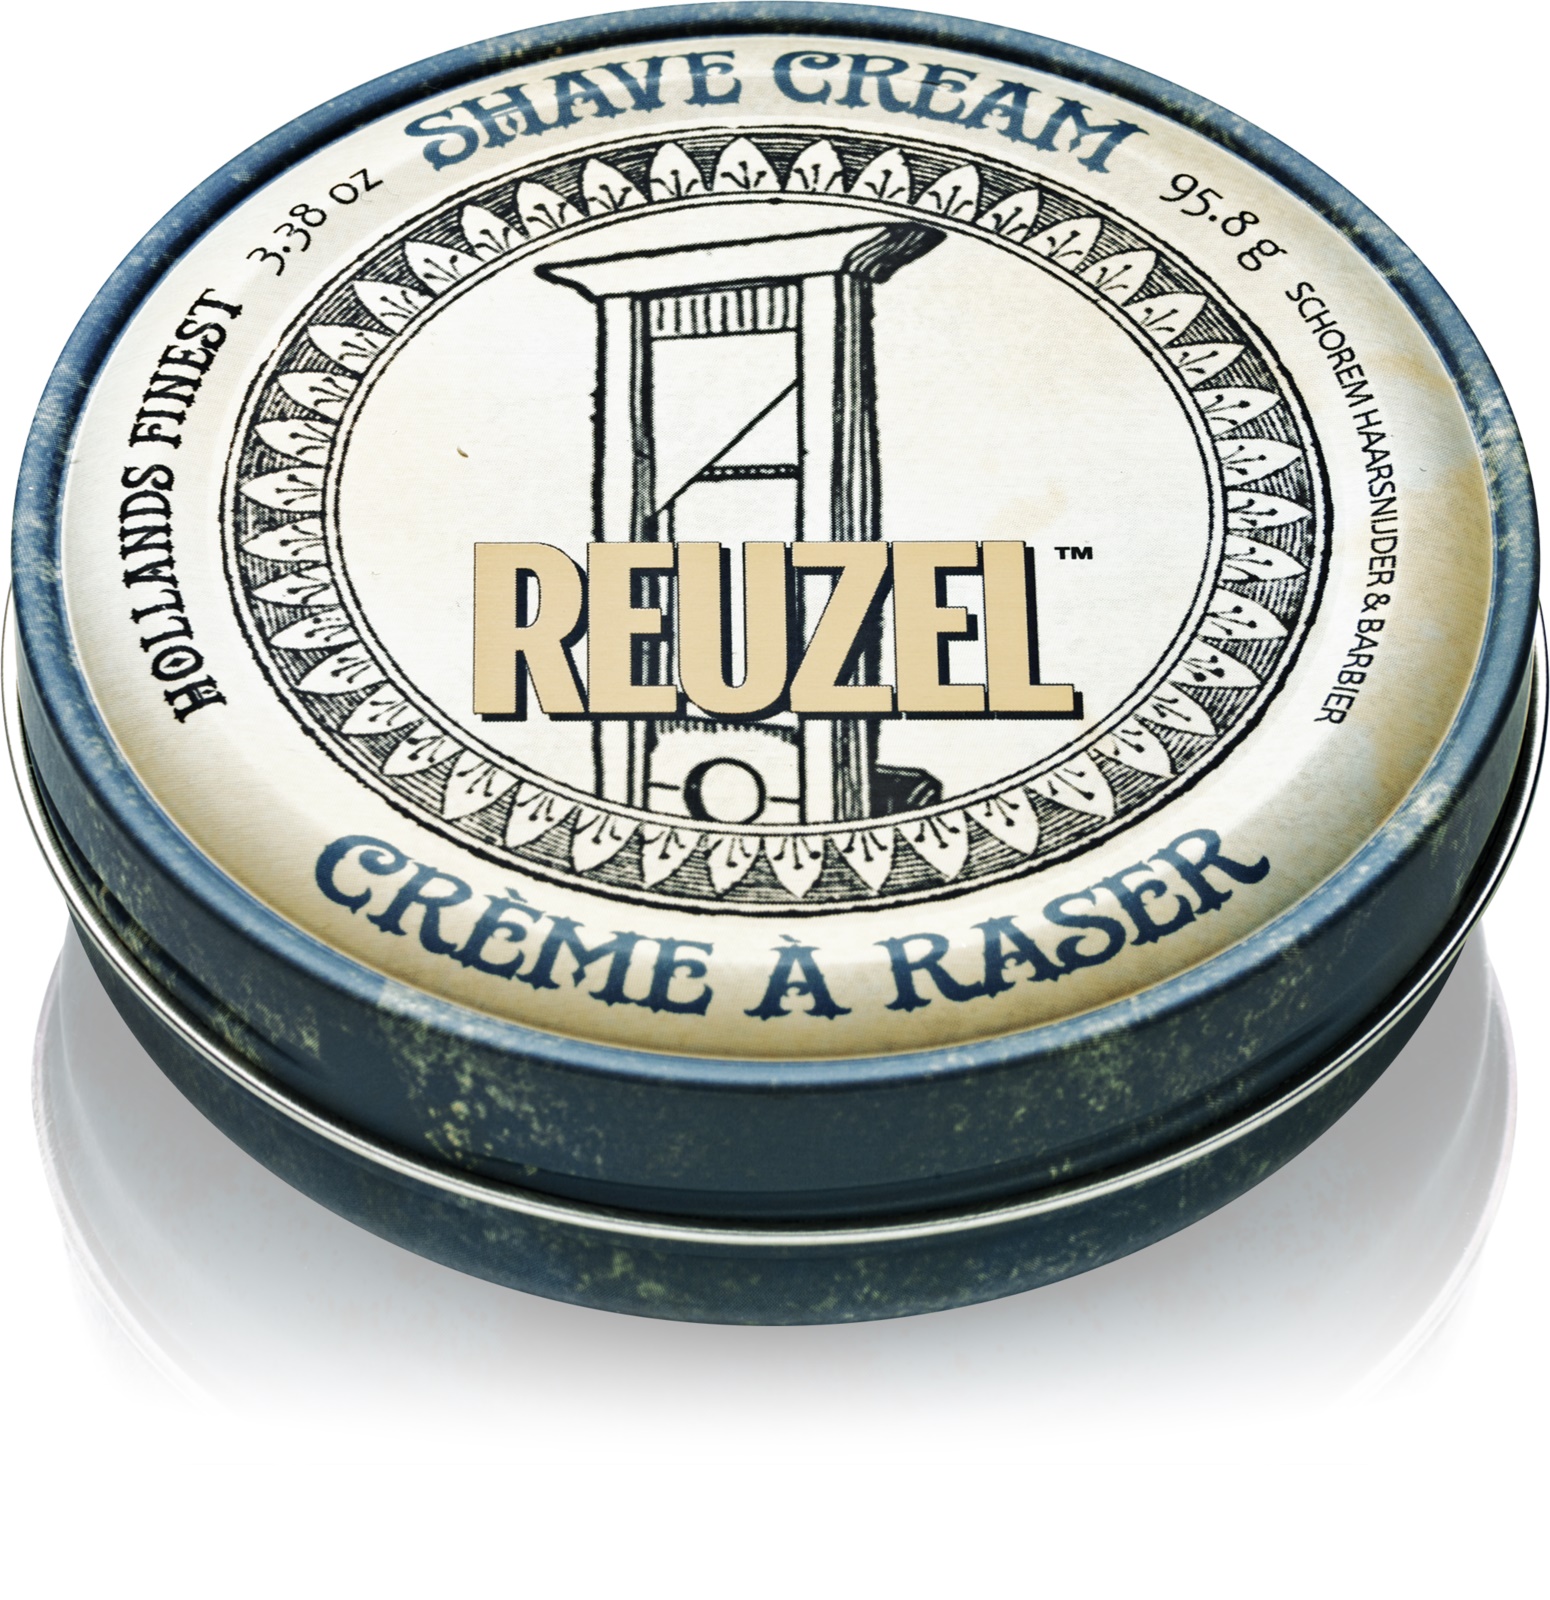 REUZEL Shave Cream 95,8 g